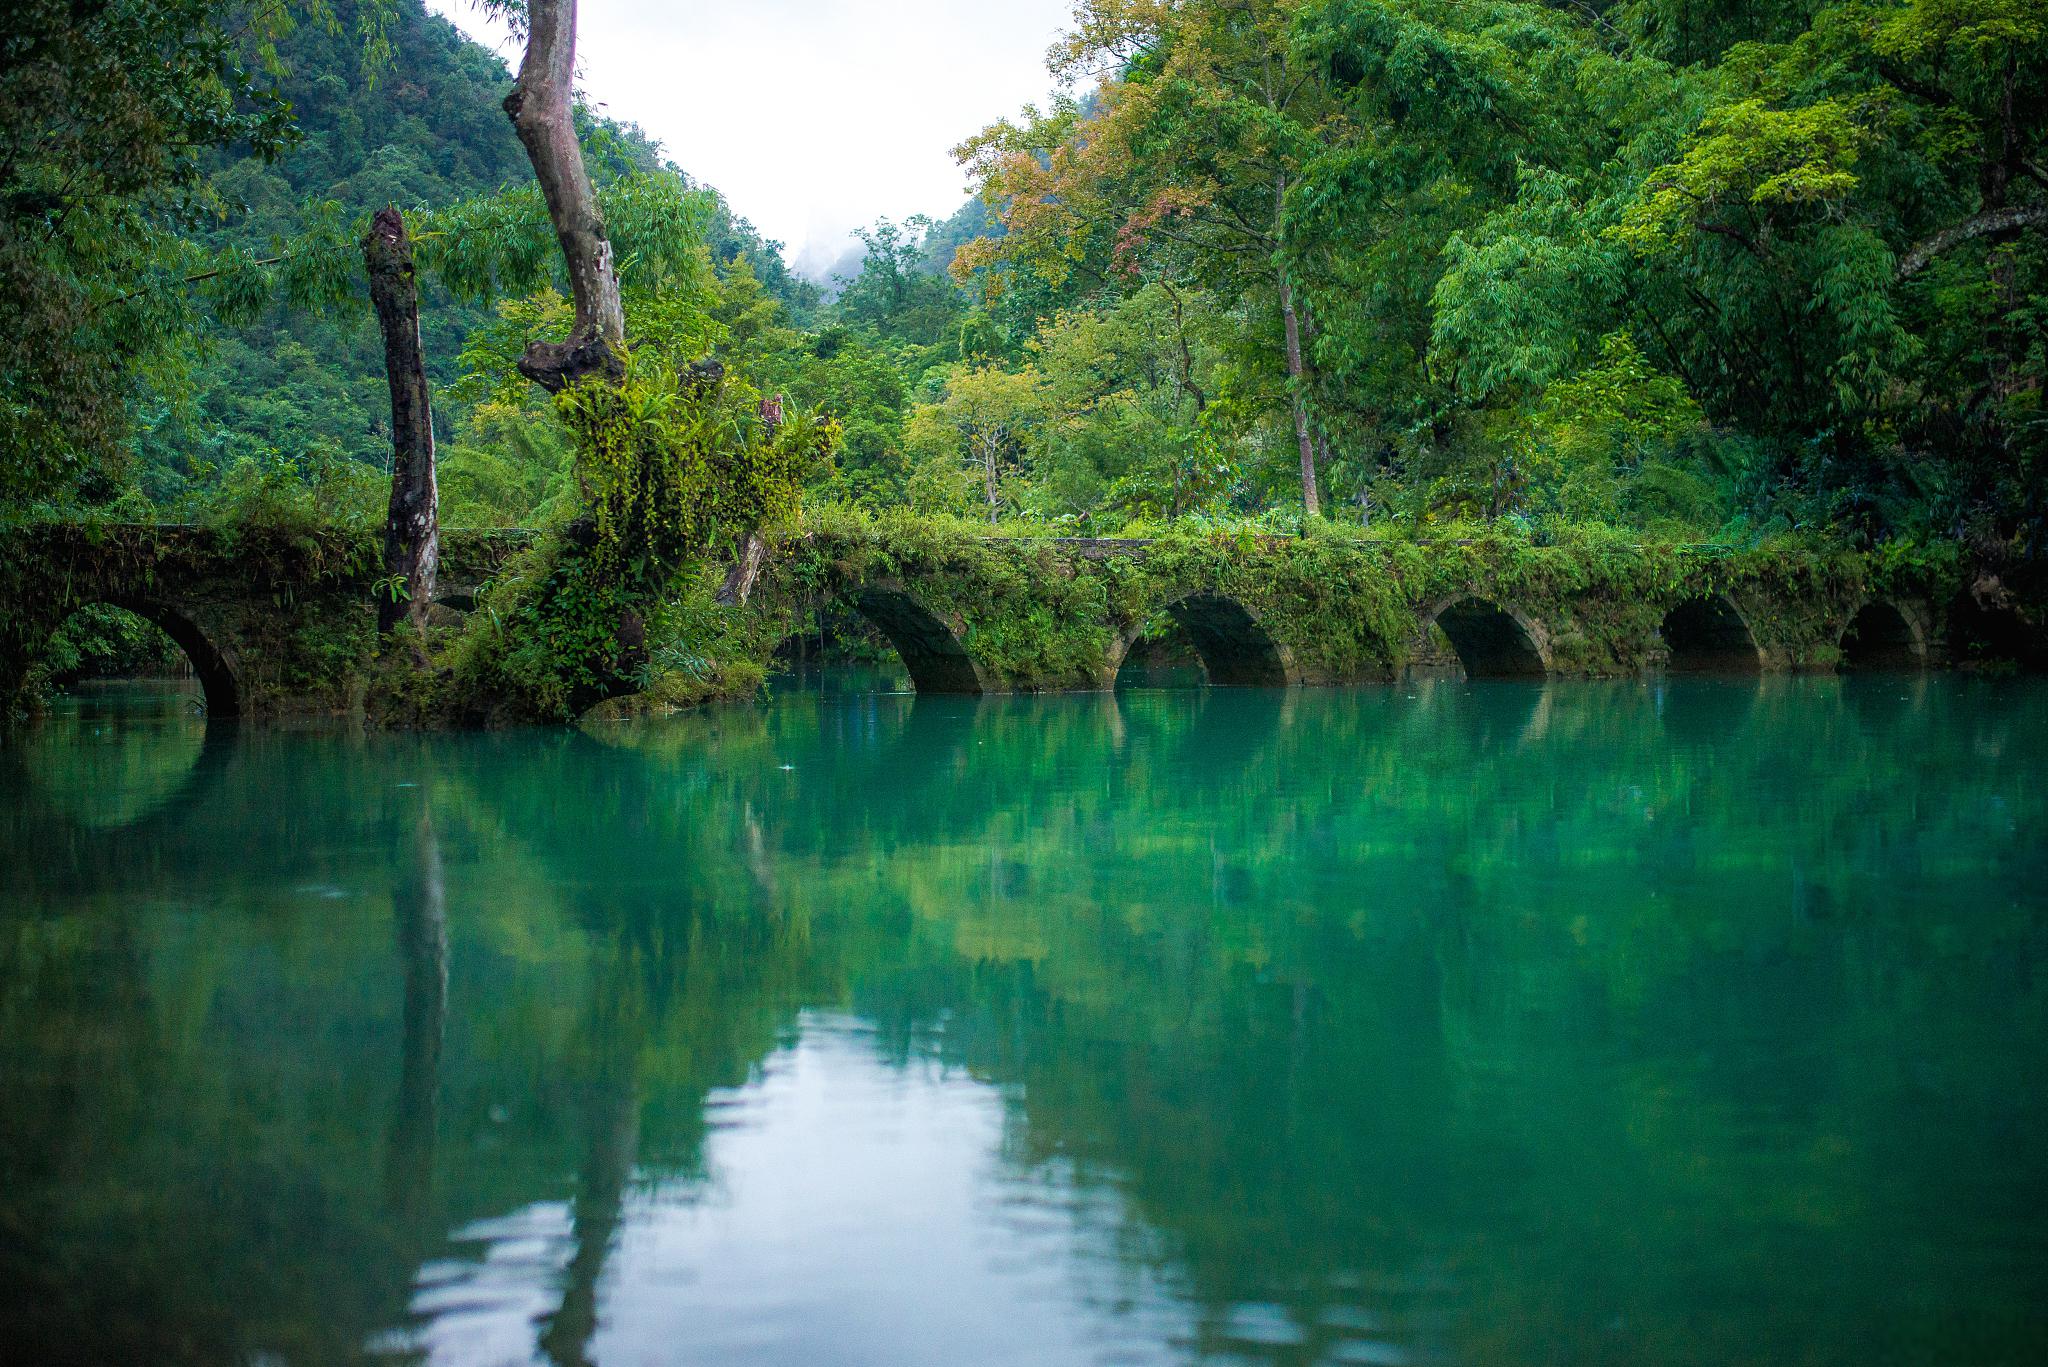 小七孔景区,探寻大自然的神奇之旅 小七孔景区位于贵州省荔波县,是一